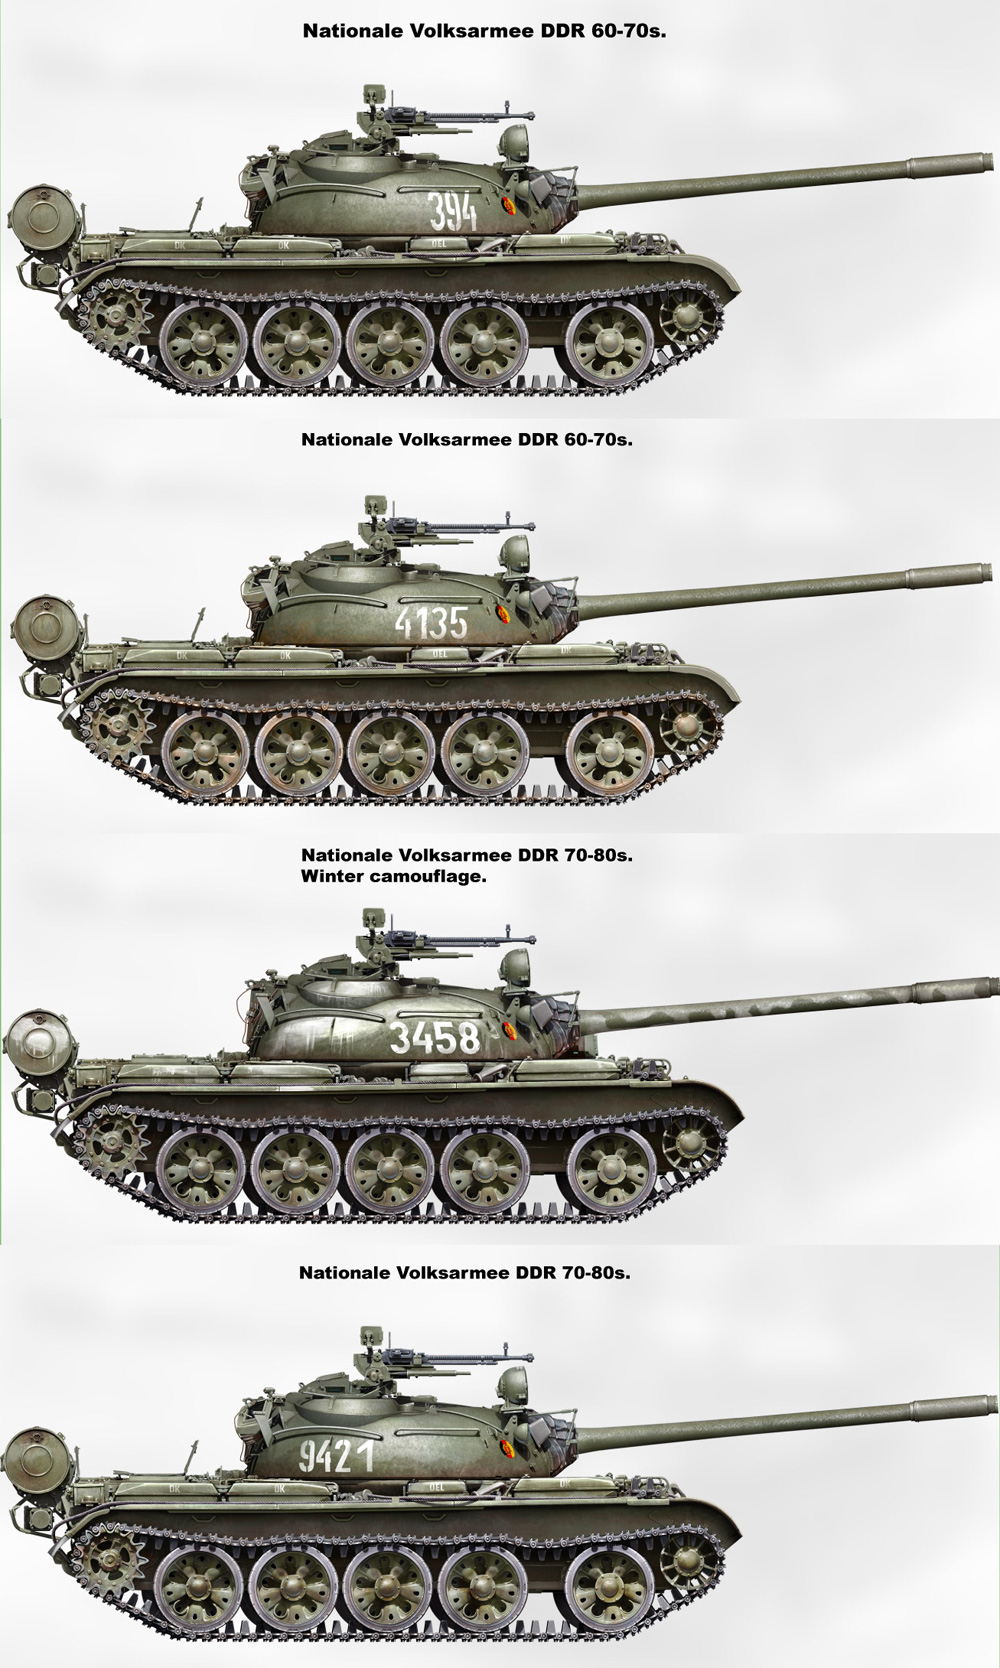 NVA T-55A プラモデル (ミニアート 1/35 ミリタリーミニチュア No.37083) 商品画像_2